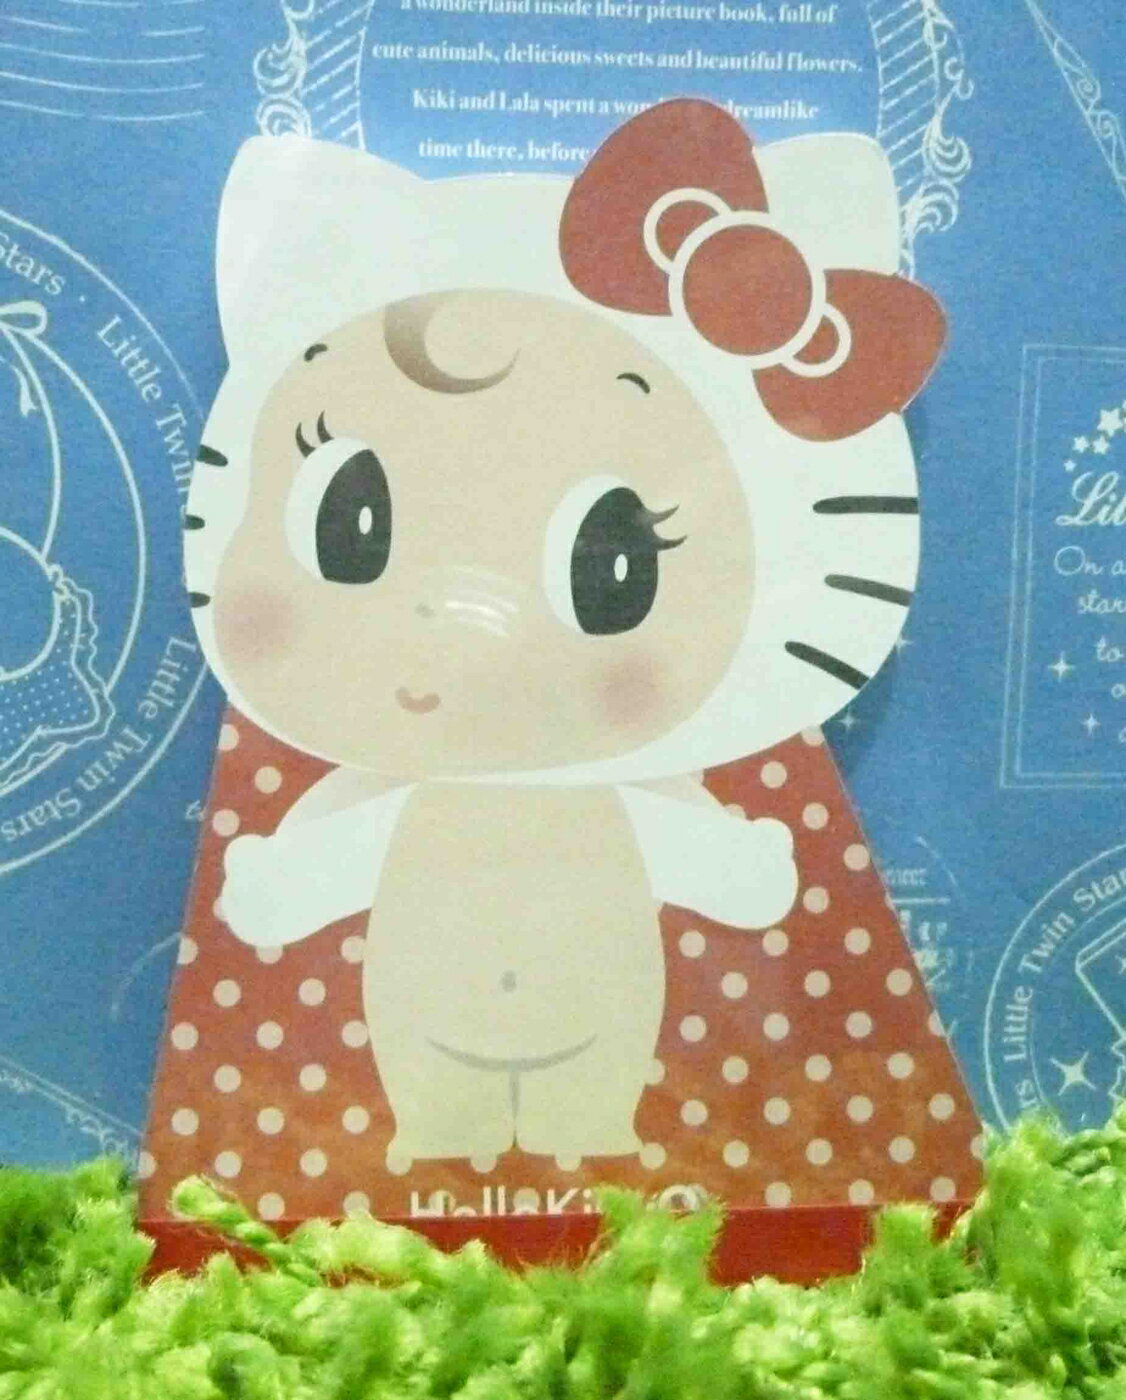 【震撼精品百貨】Hello Kitty 凱蒂貓 造型便條紙-紅點點圖案【共1款】 震撼日式精品百貨